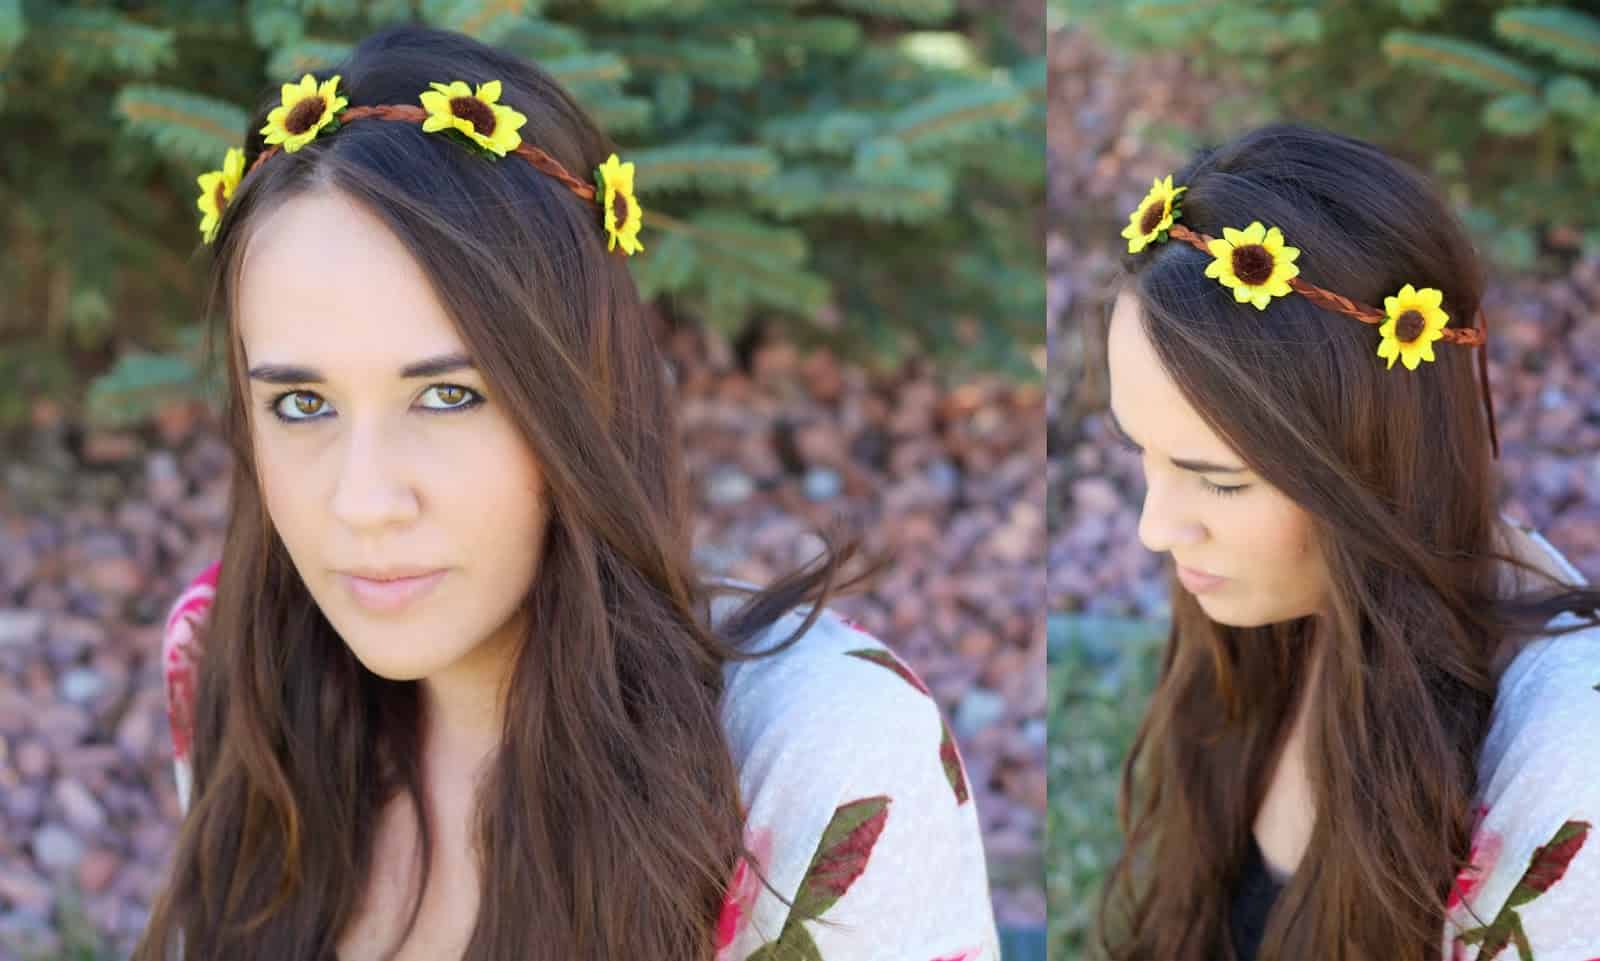 Sunflower headband